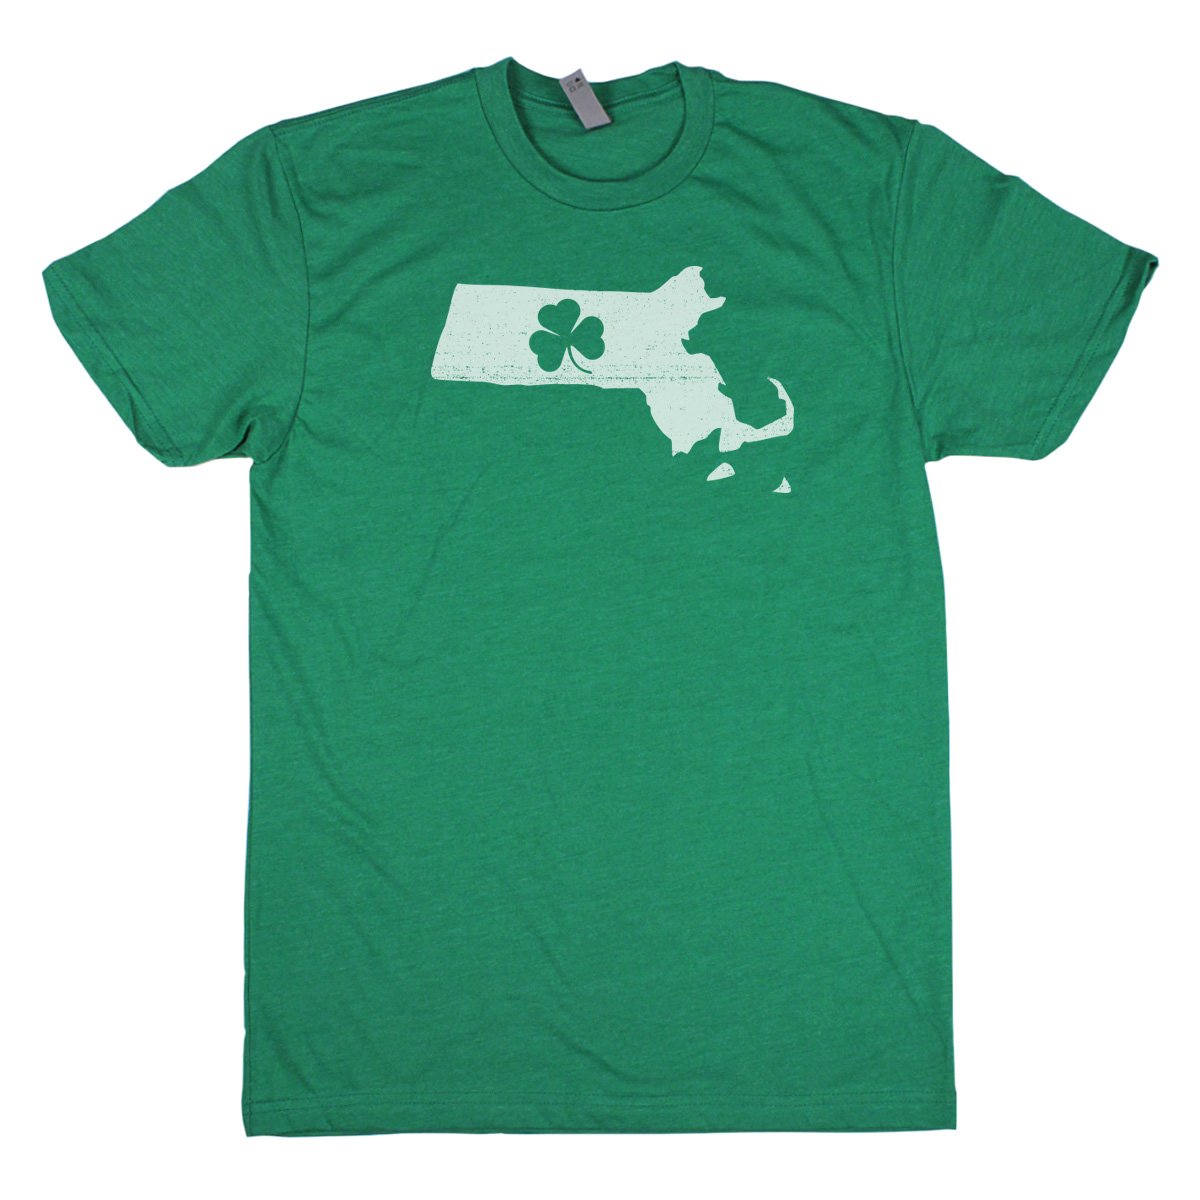 Shamrock Men's Unisex T-Shirt - Arkansas